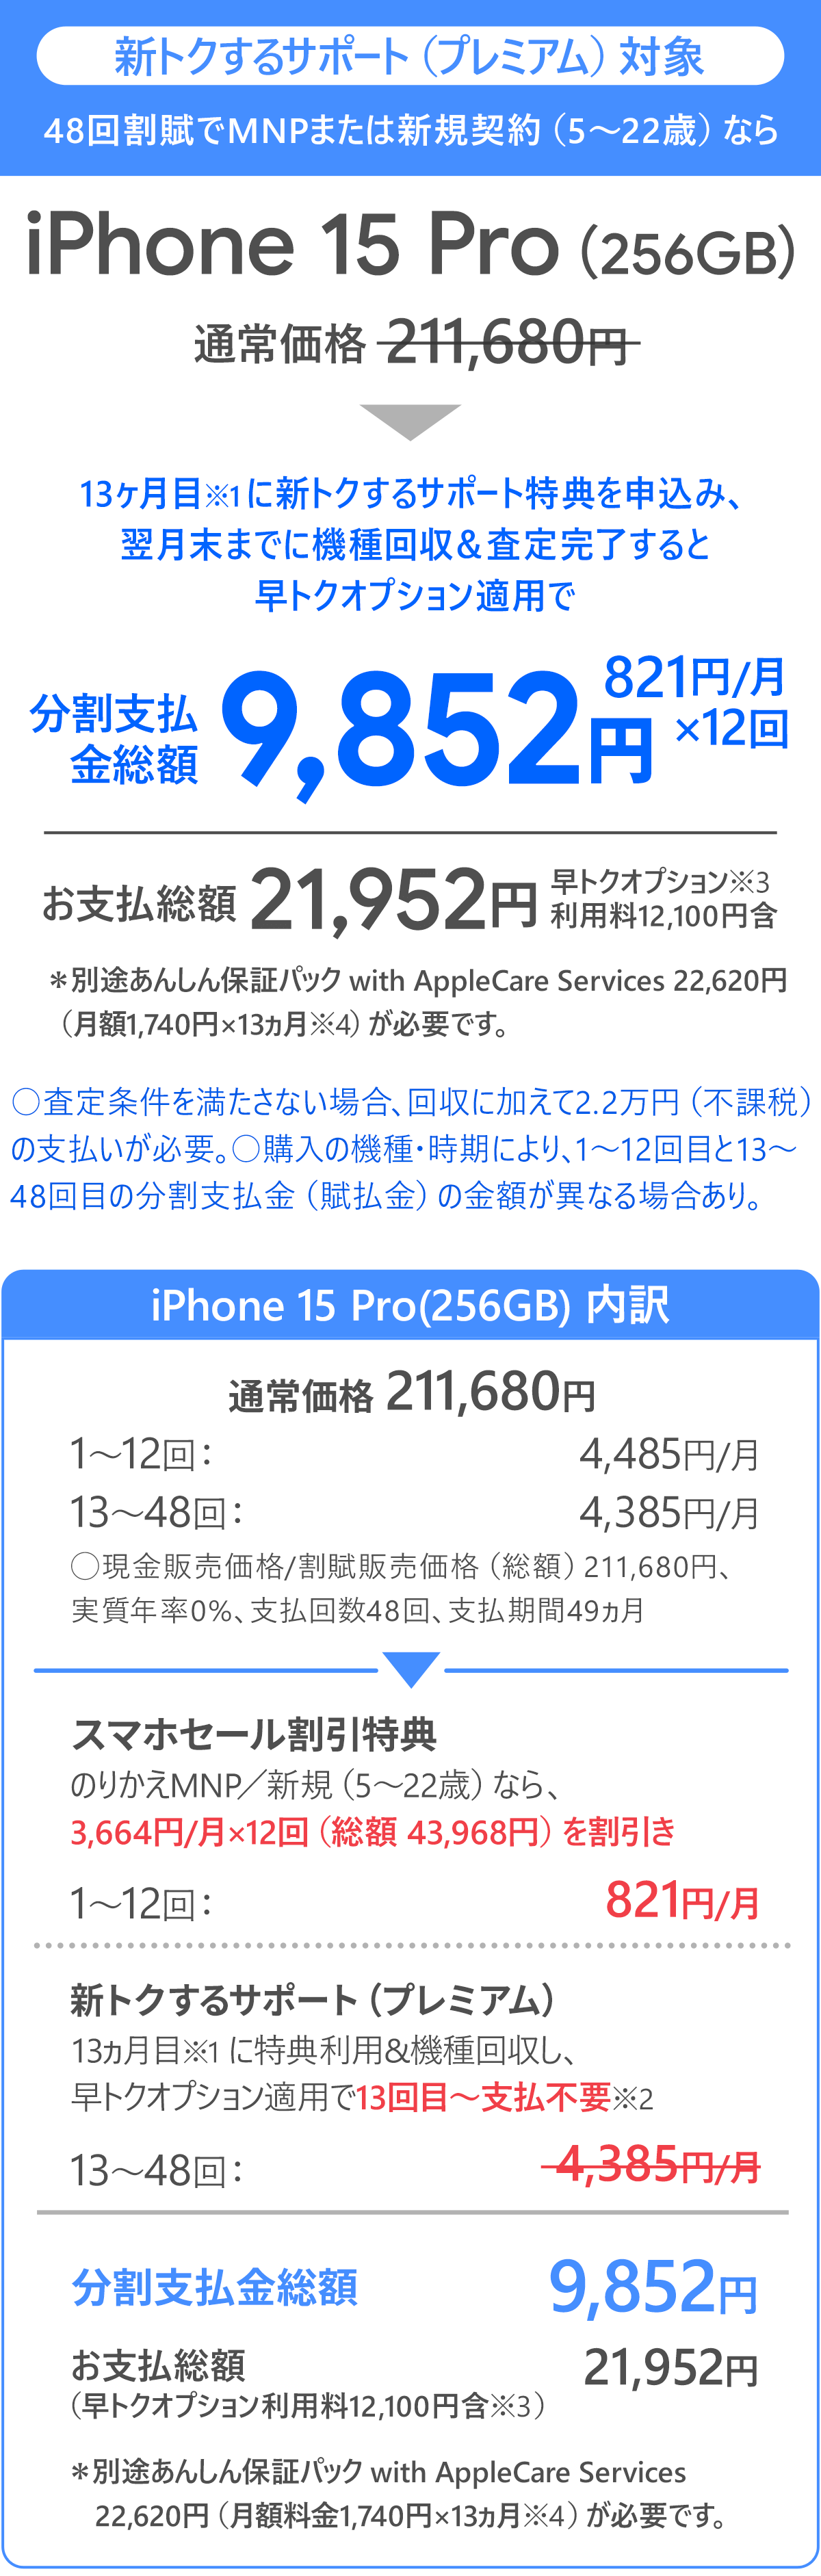 ソフトバンク「iPhone 15 Pro 256GB」大セール